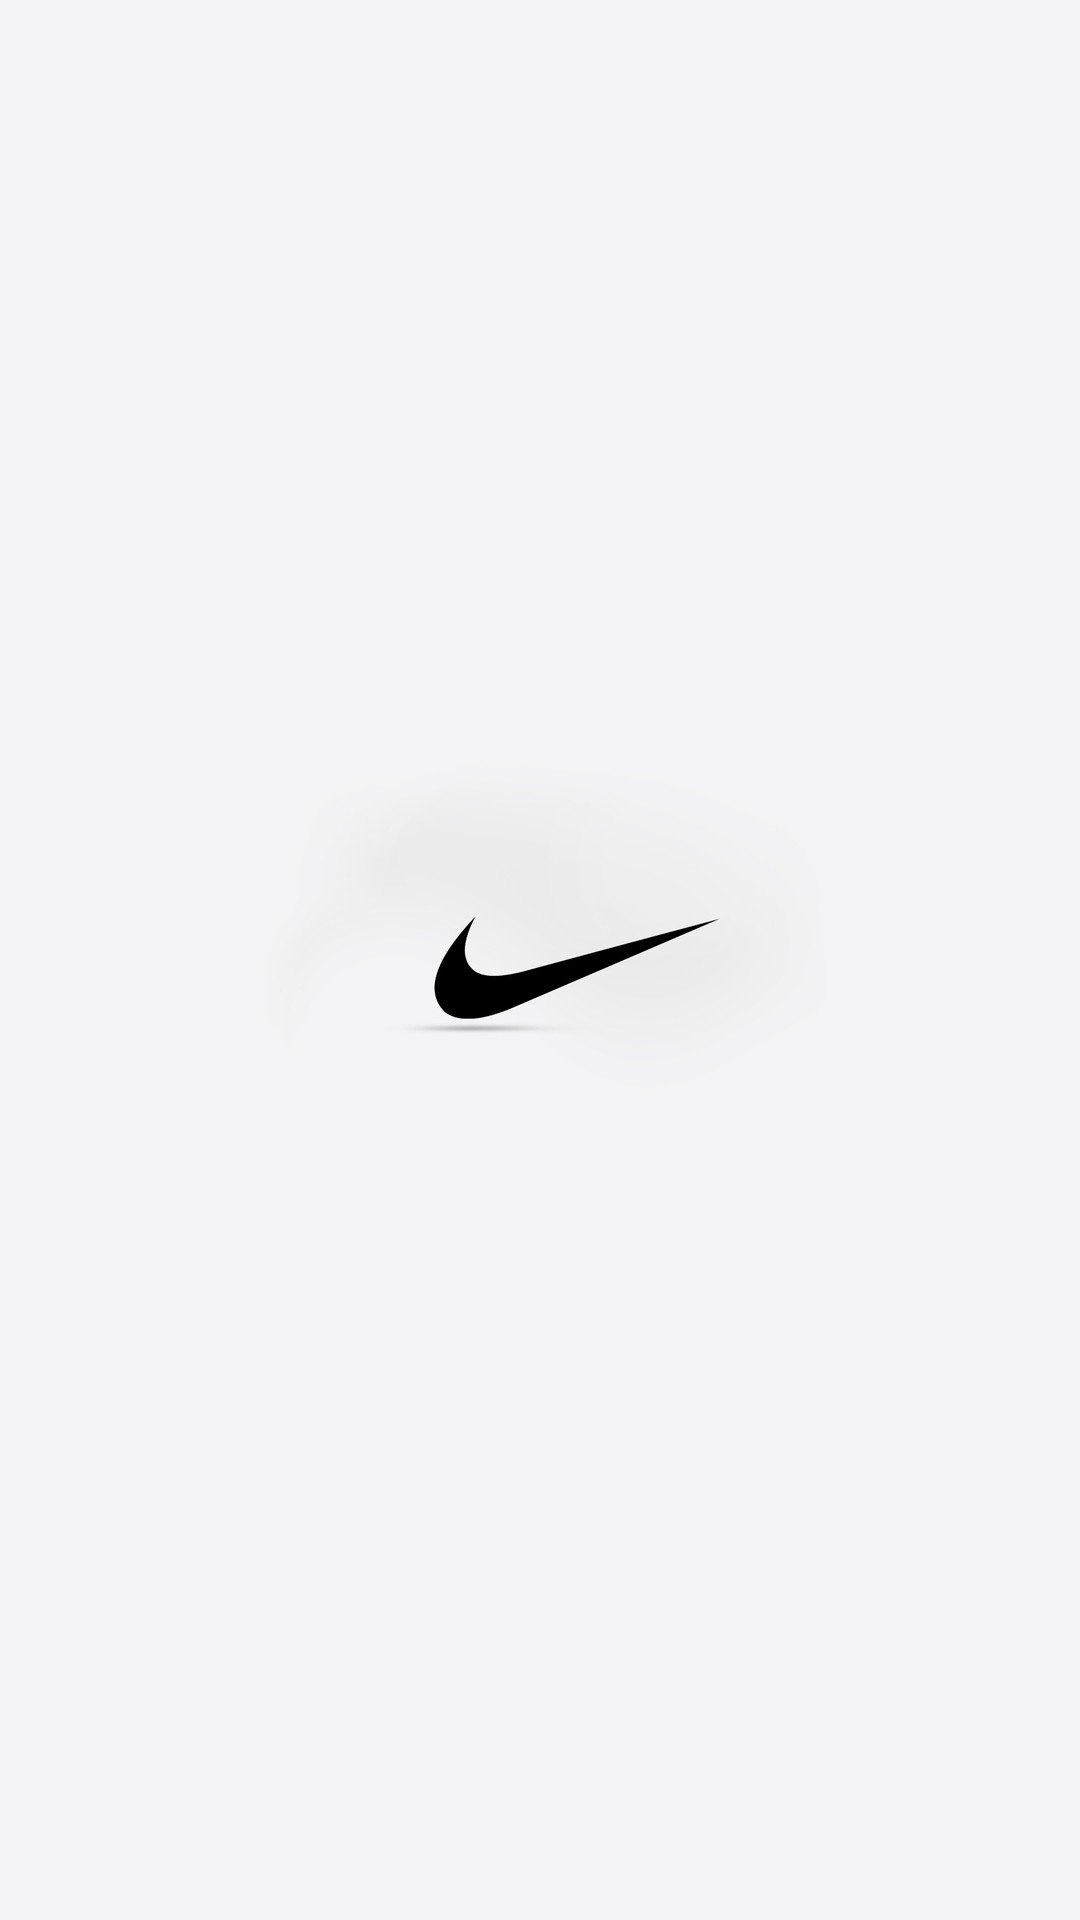 Thiết kế Logo Nike cho thấy nét đẹp vượt thời gian, bởi sự đơn giản thì luôn mang đến hiệu ứng mạnh mẽ hơn. Hãy liên tưởng đến thành công, sự phong cách và năng động khi nhìn vào hình ảnh đặc biệt này của Nike.